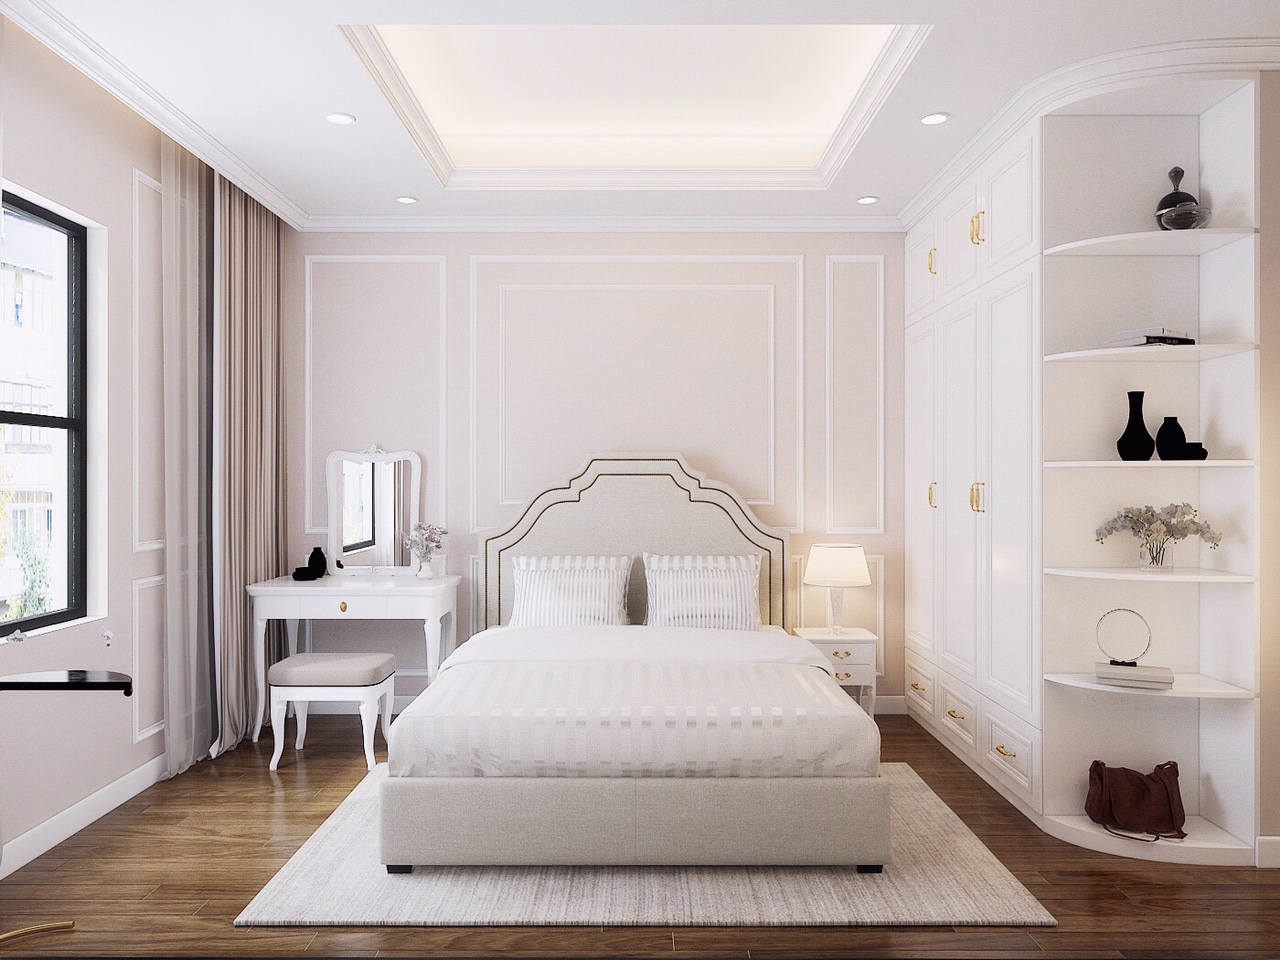 Trong phòng ngủ, tường đầu giường được trang trí nhẹ nhàng với sắc hồng - xám pha trộn ăn ý, vừa đảm bảo sự hài hòa với tổng thể không gian, vừa tạo điểm nhấn nữ tính.